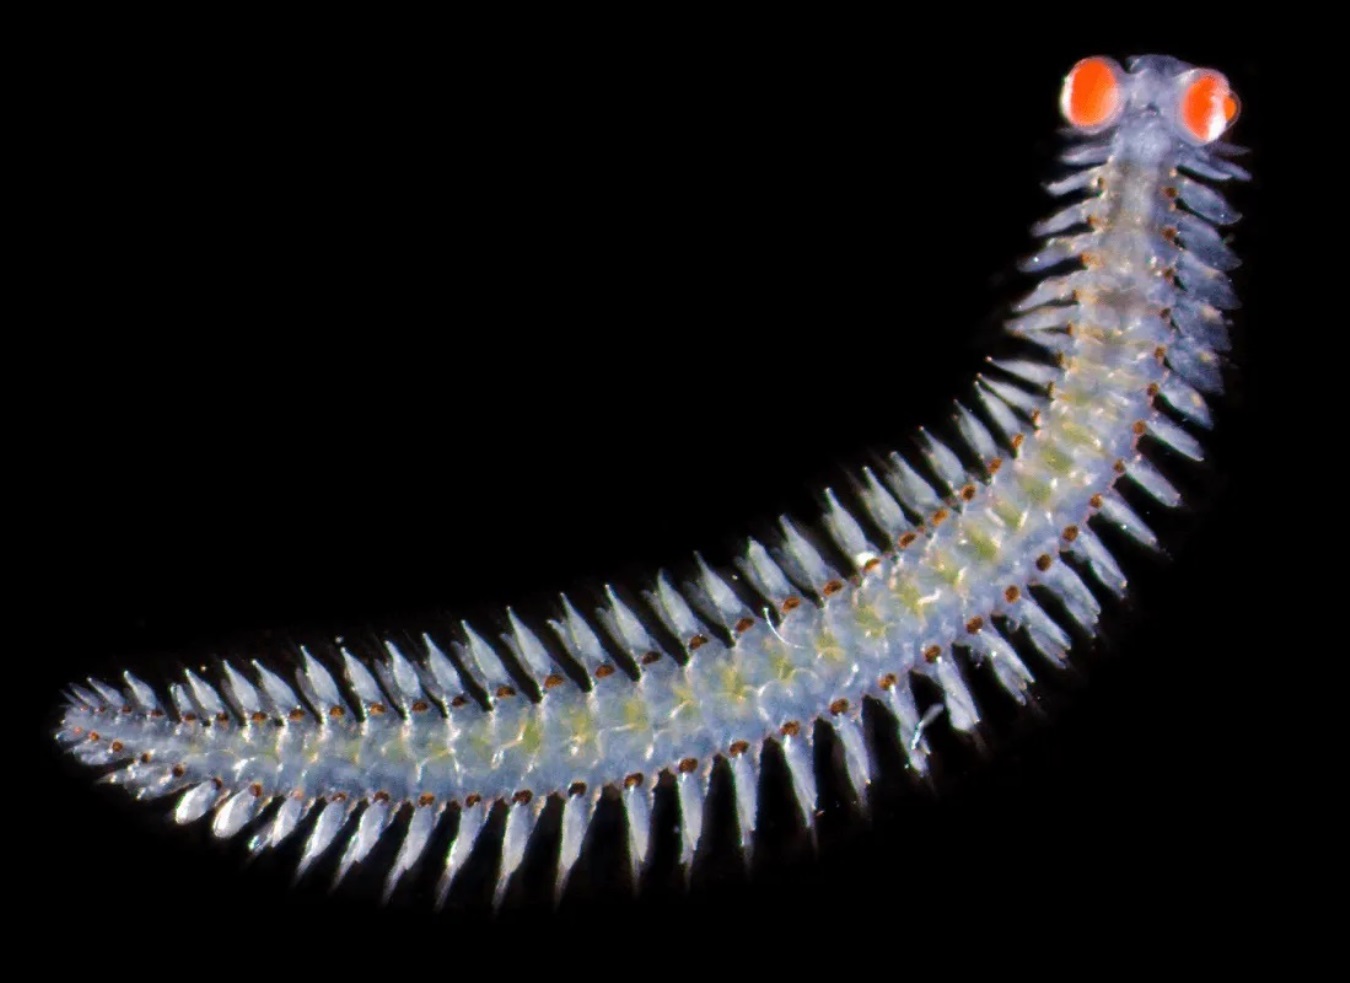 Vermi marini con occhi giganti: una meraviglia che affascina gli scienziati